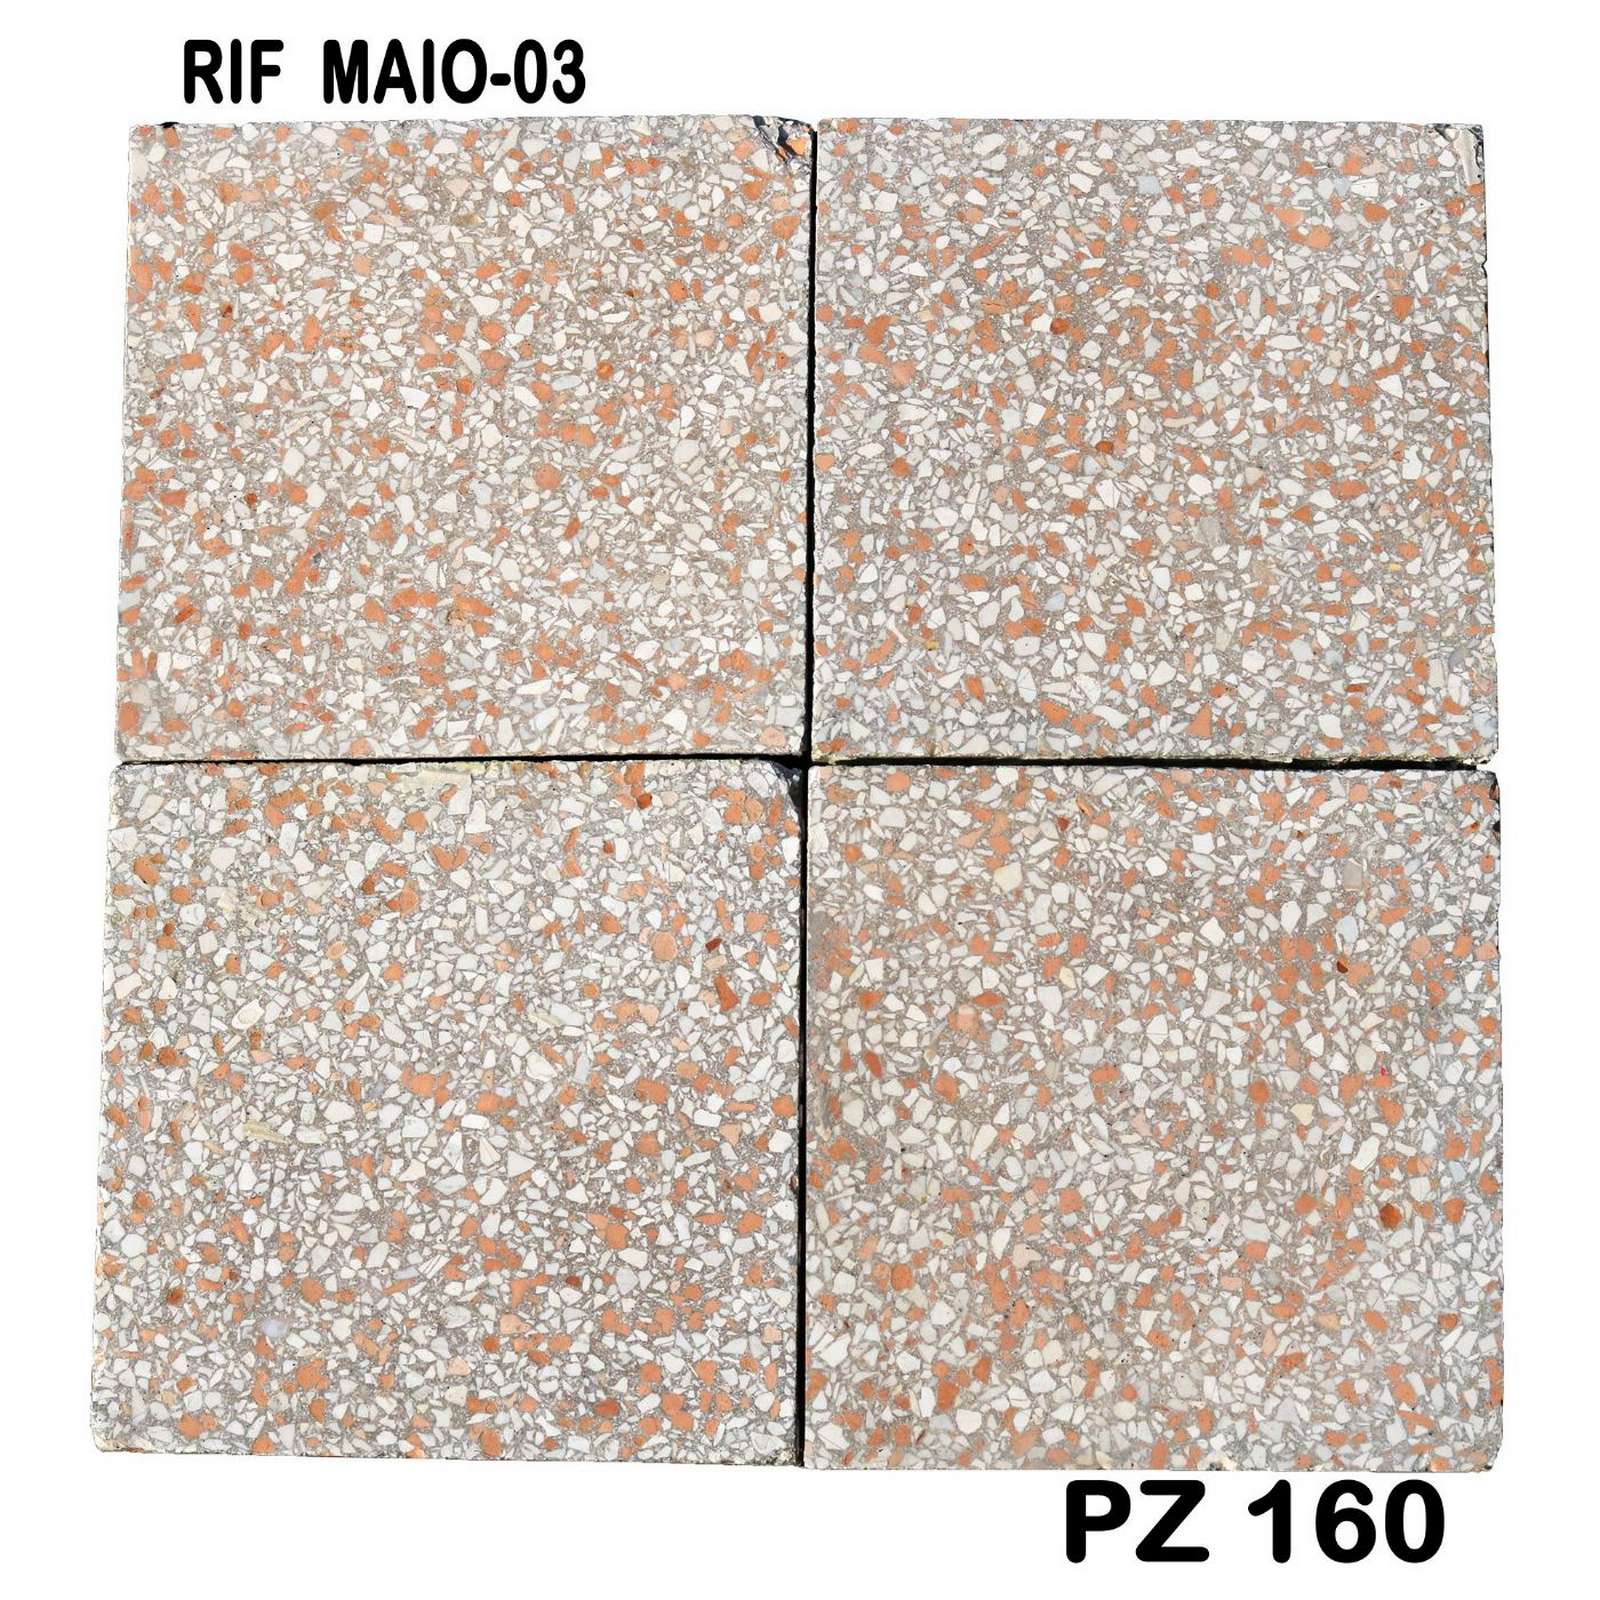 Antica pavimentazione in graniglia cm20x20 - Cementine e Graniglie - Pavimentazioni Antiche - Prodotti - Antichità Fiorillo